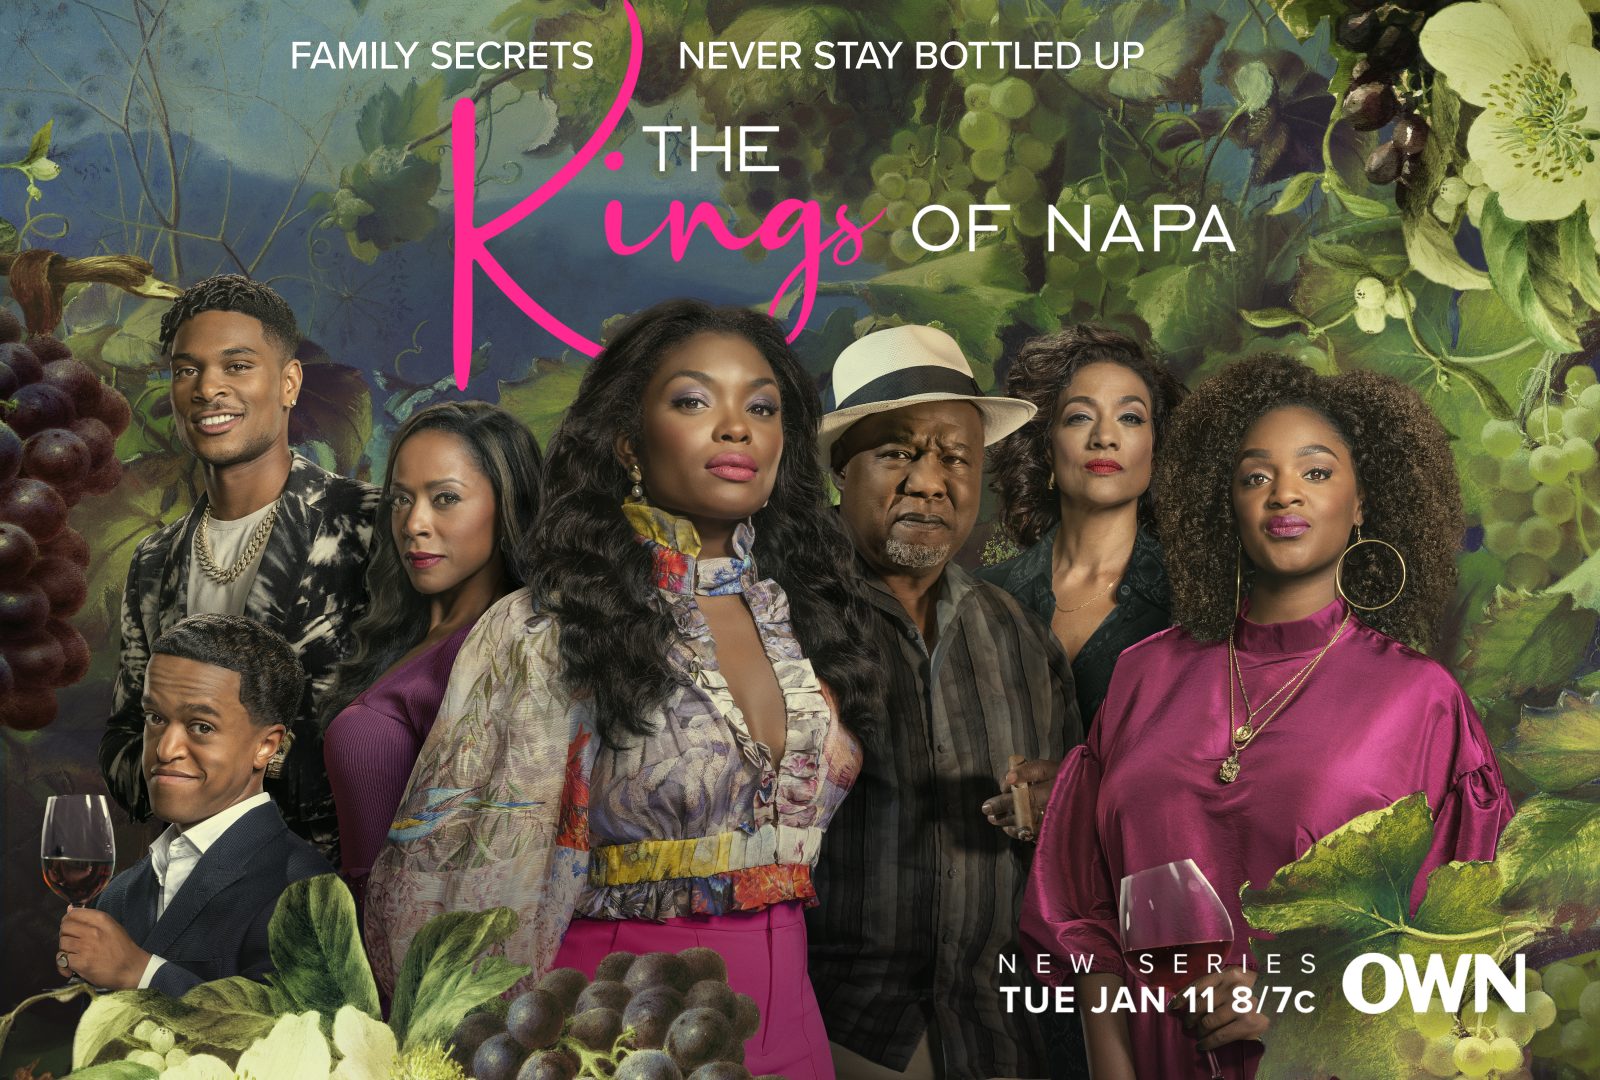 'The Kings of Napa' actors reveal juicy secrets in season 1